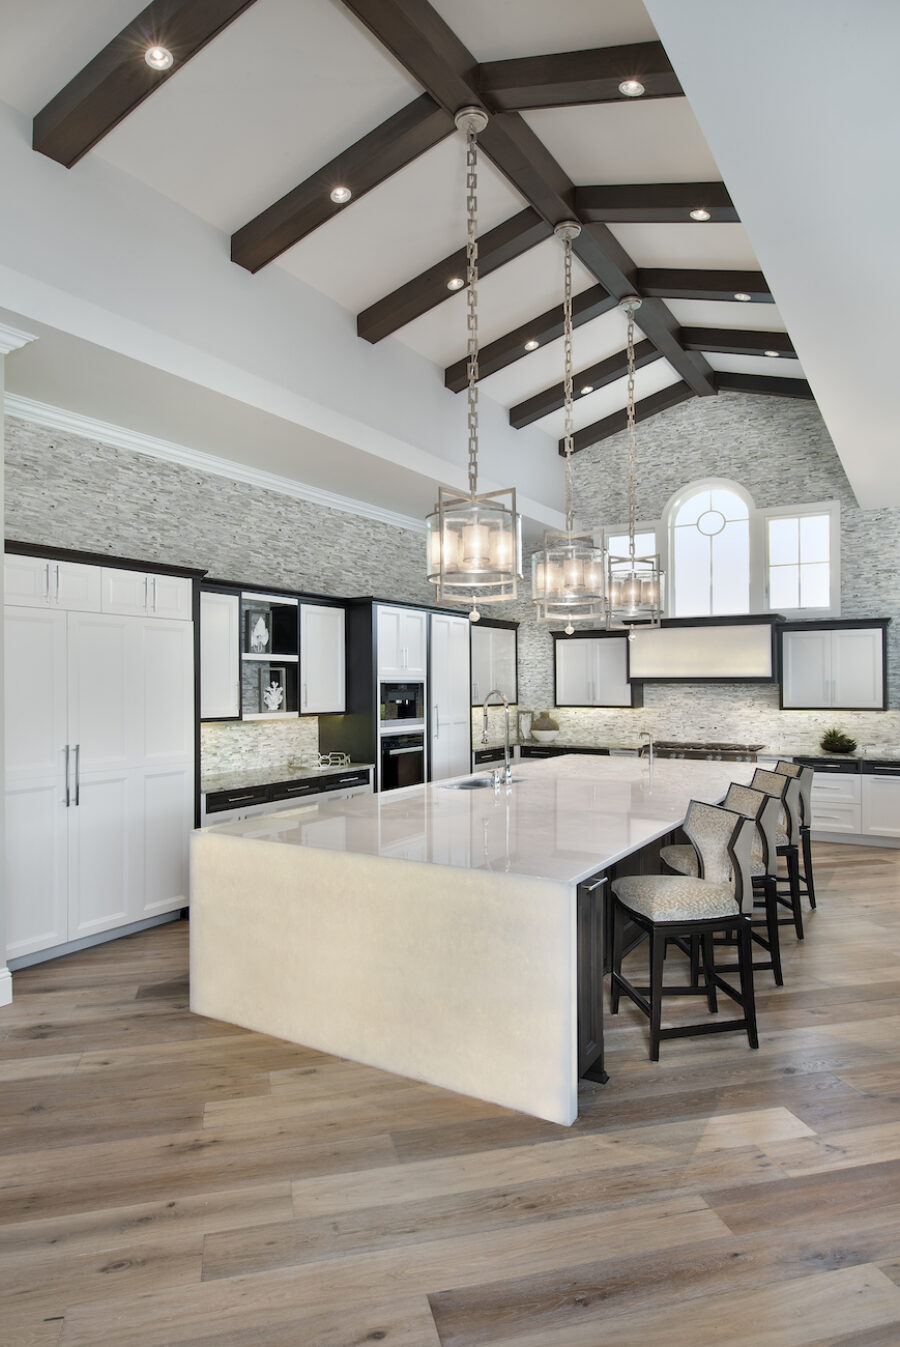 design-west-kitchen-interior-design-large-kitchen-island